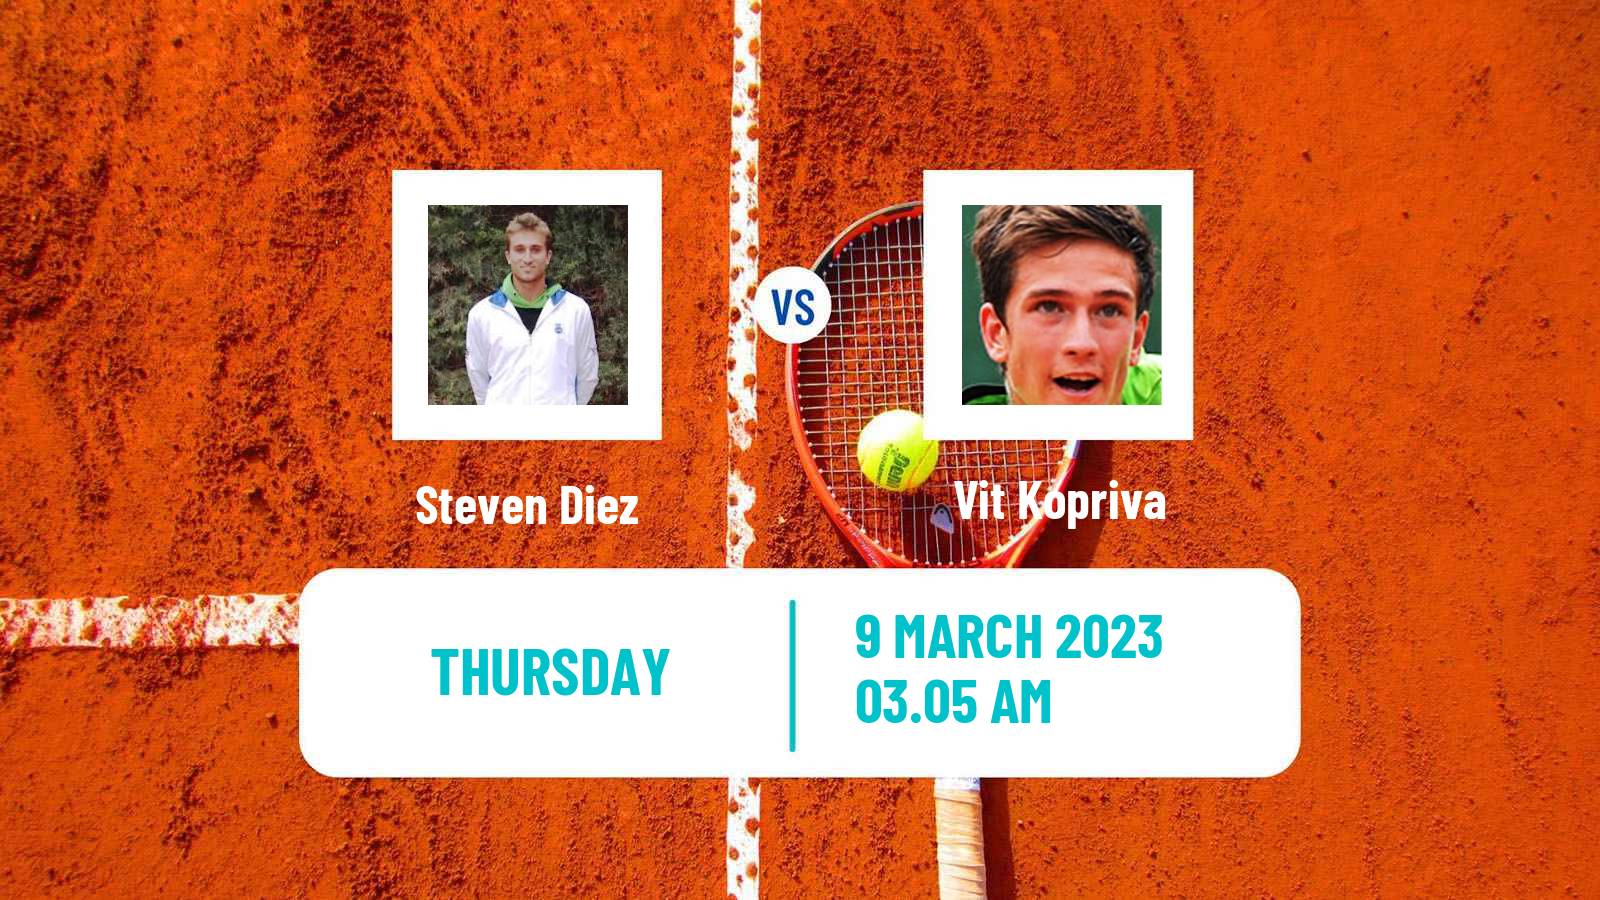 Tennis ATP Challenger Steven Diez - Vit Kopriva